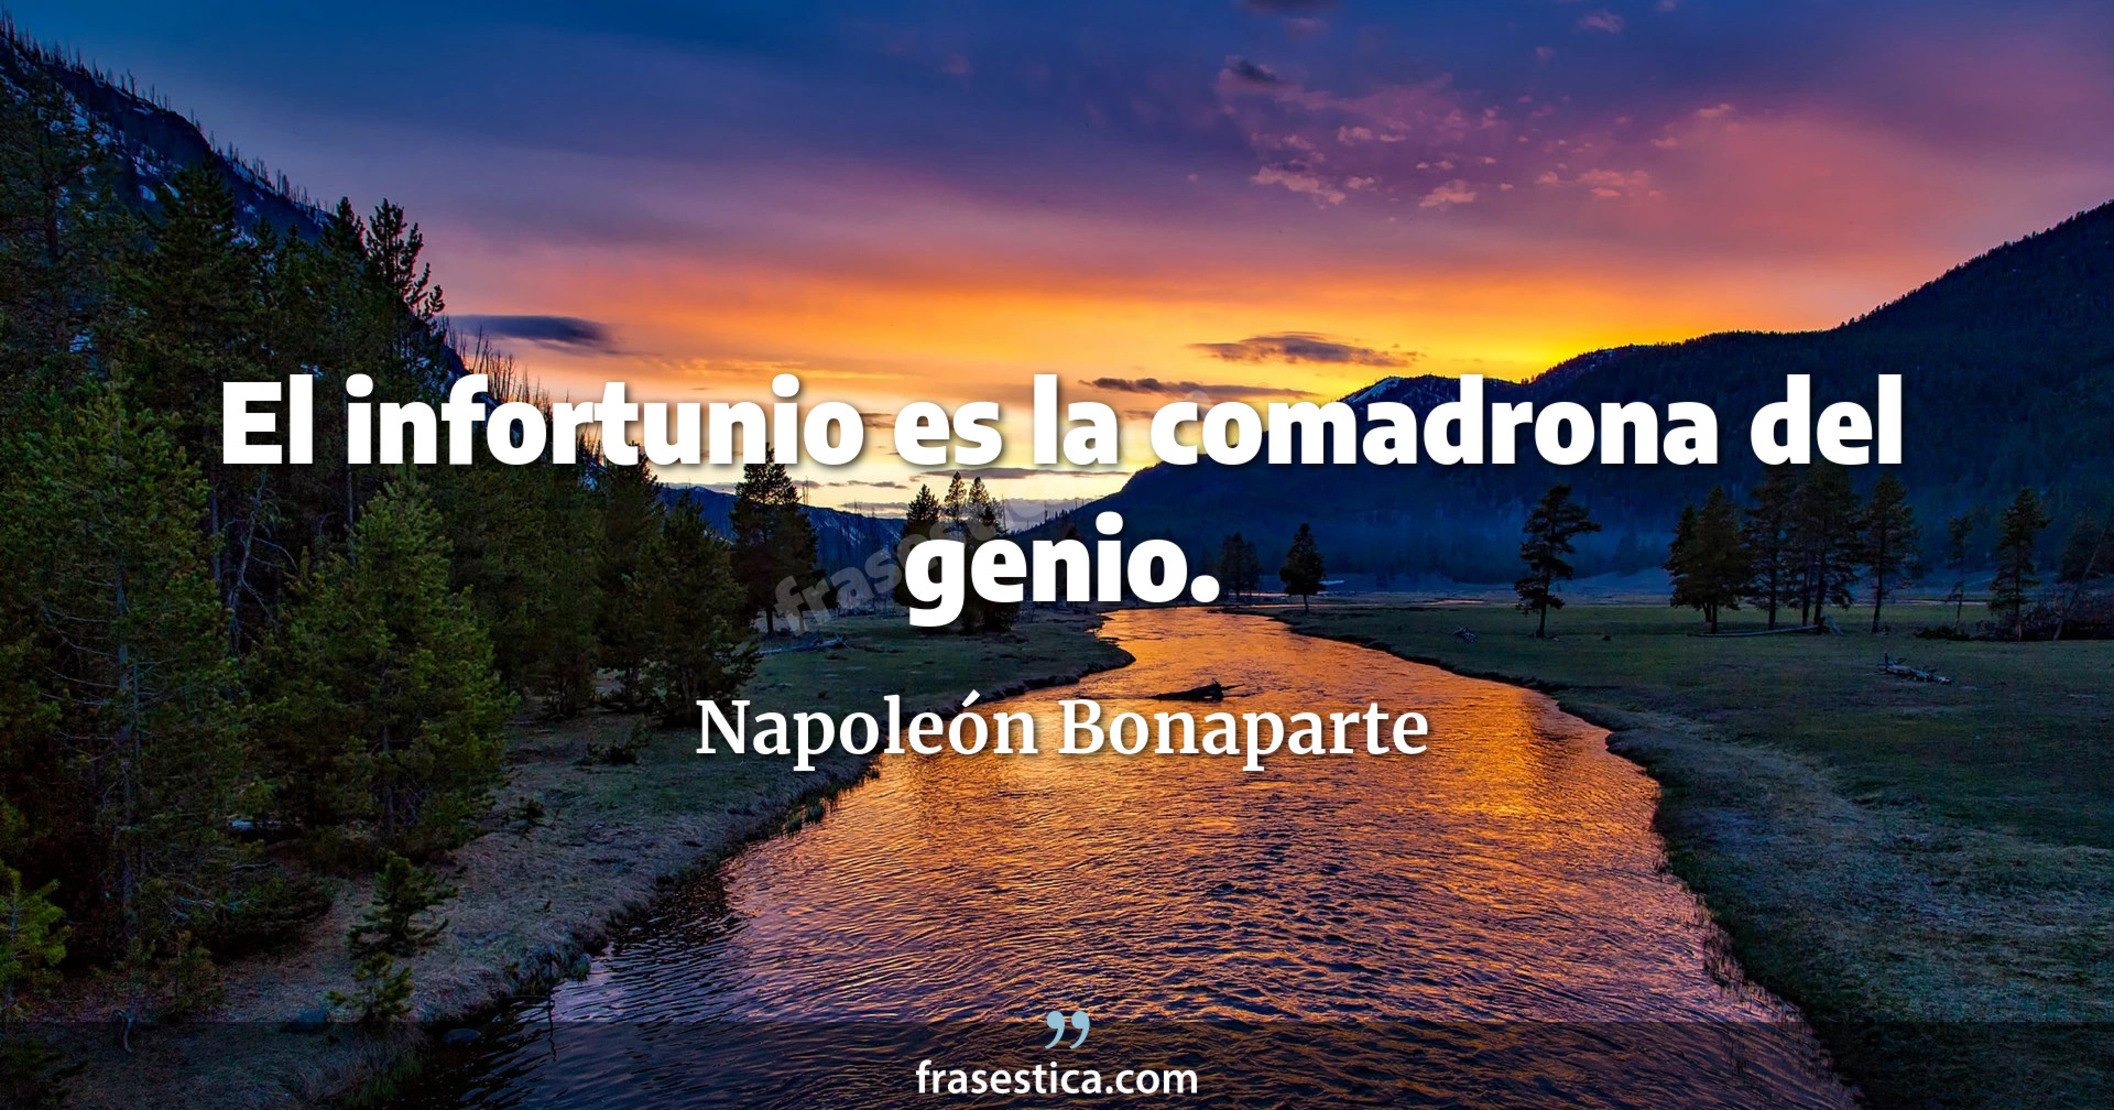 El infortunio es la comadrona del genio. - Napoleón Bonaparte